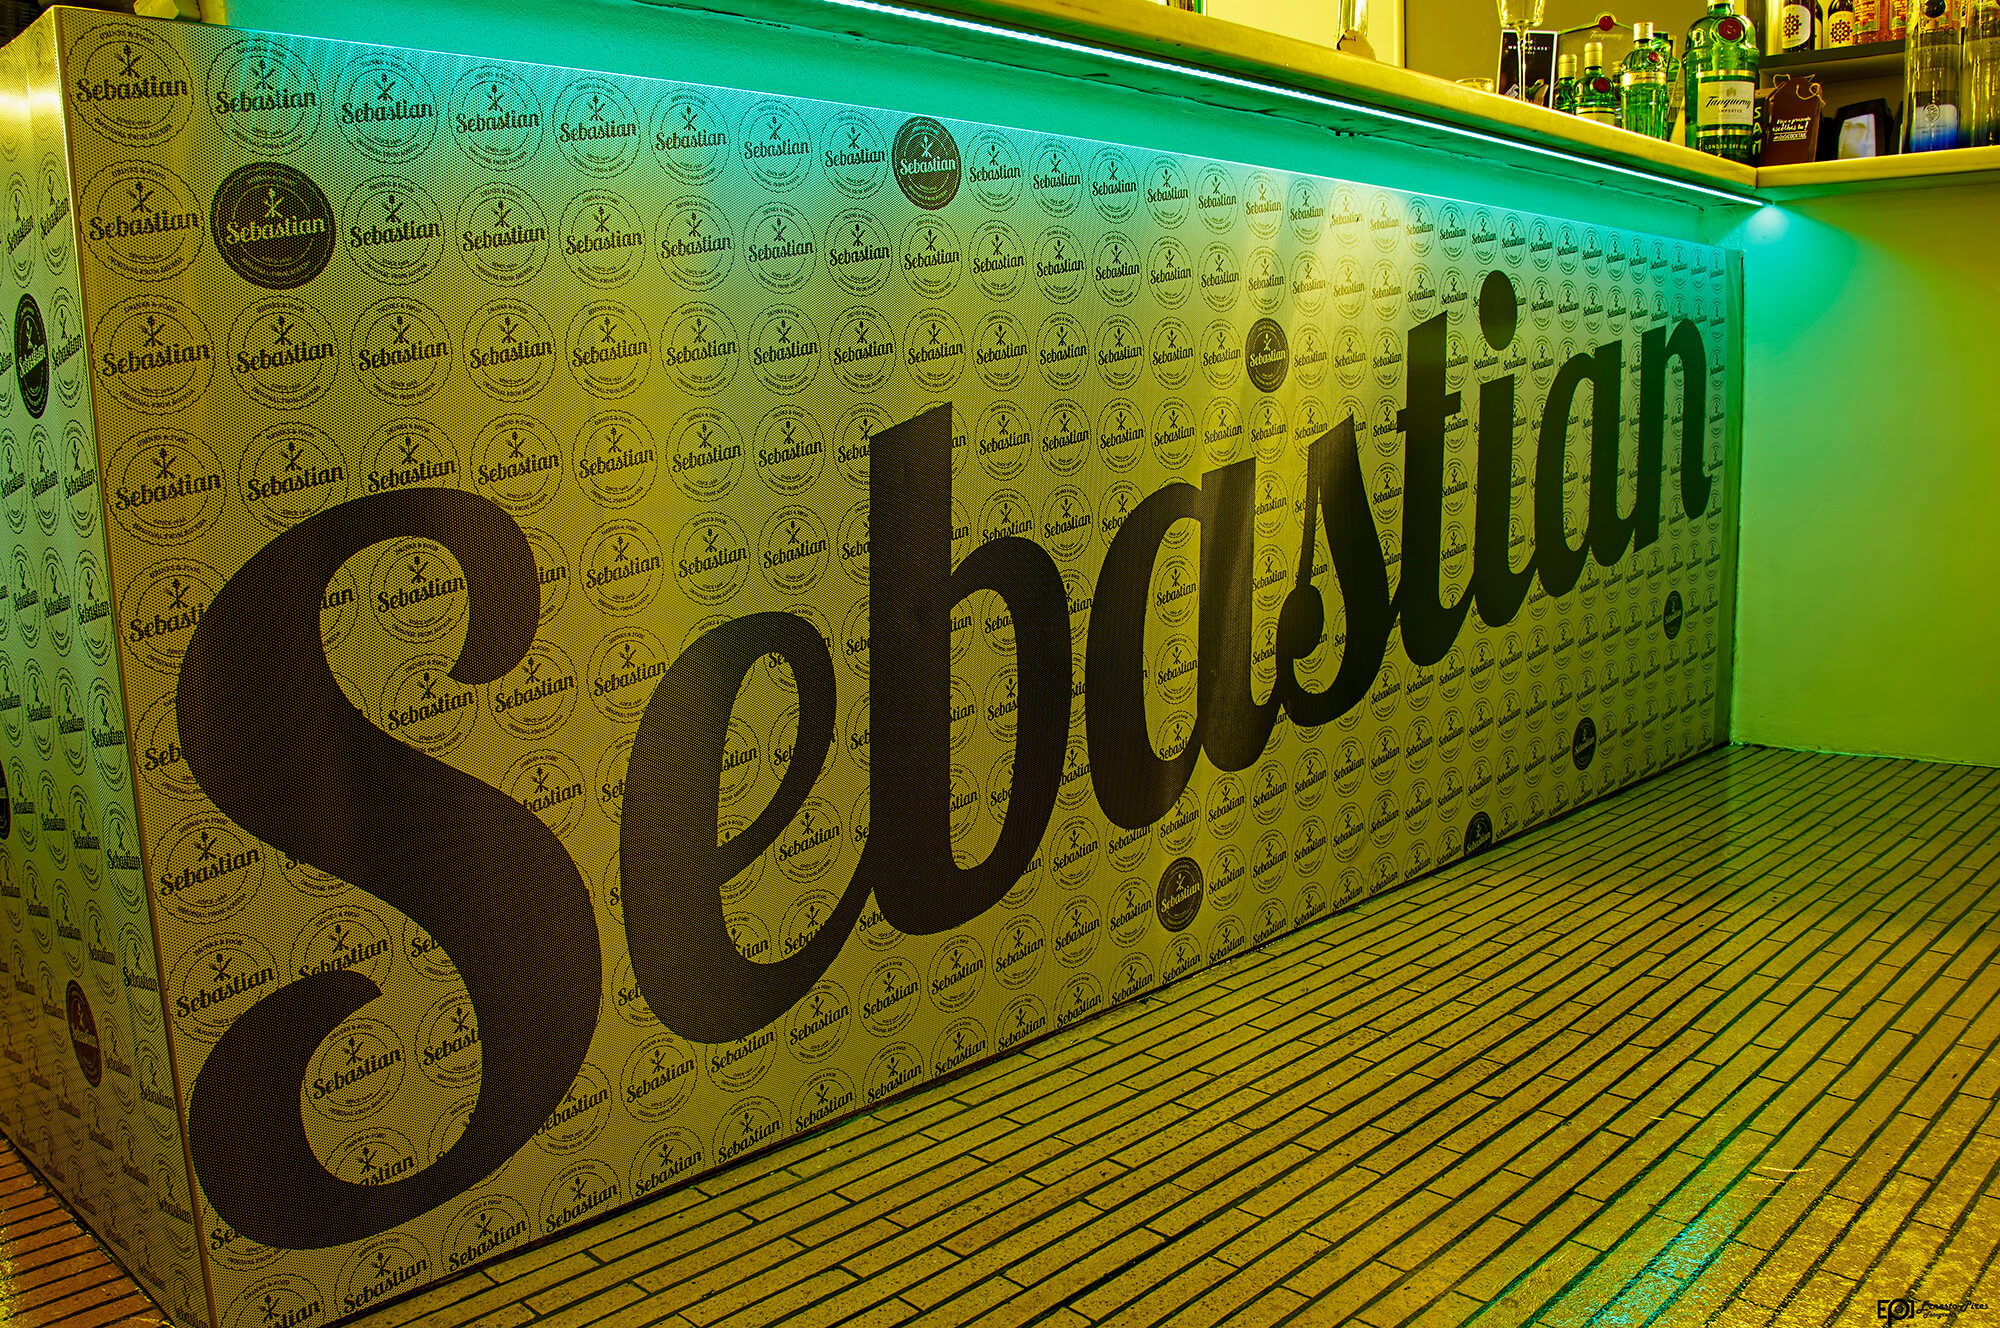 Café Sebastian Bar - Impressão em vinil perfurado | Way2Start - Design & Digital Agency